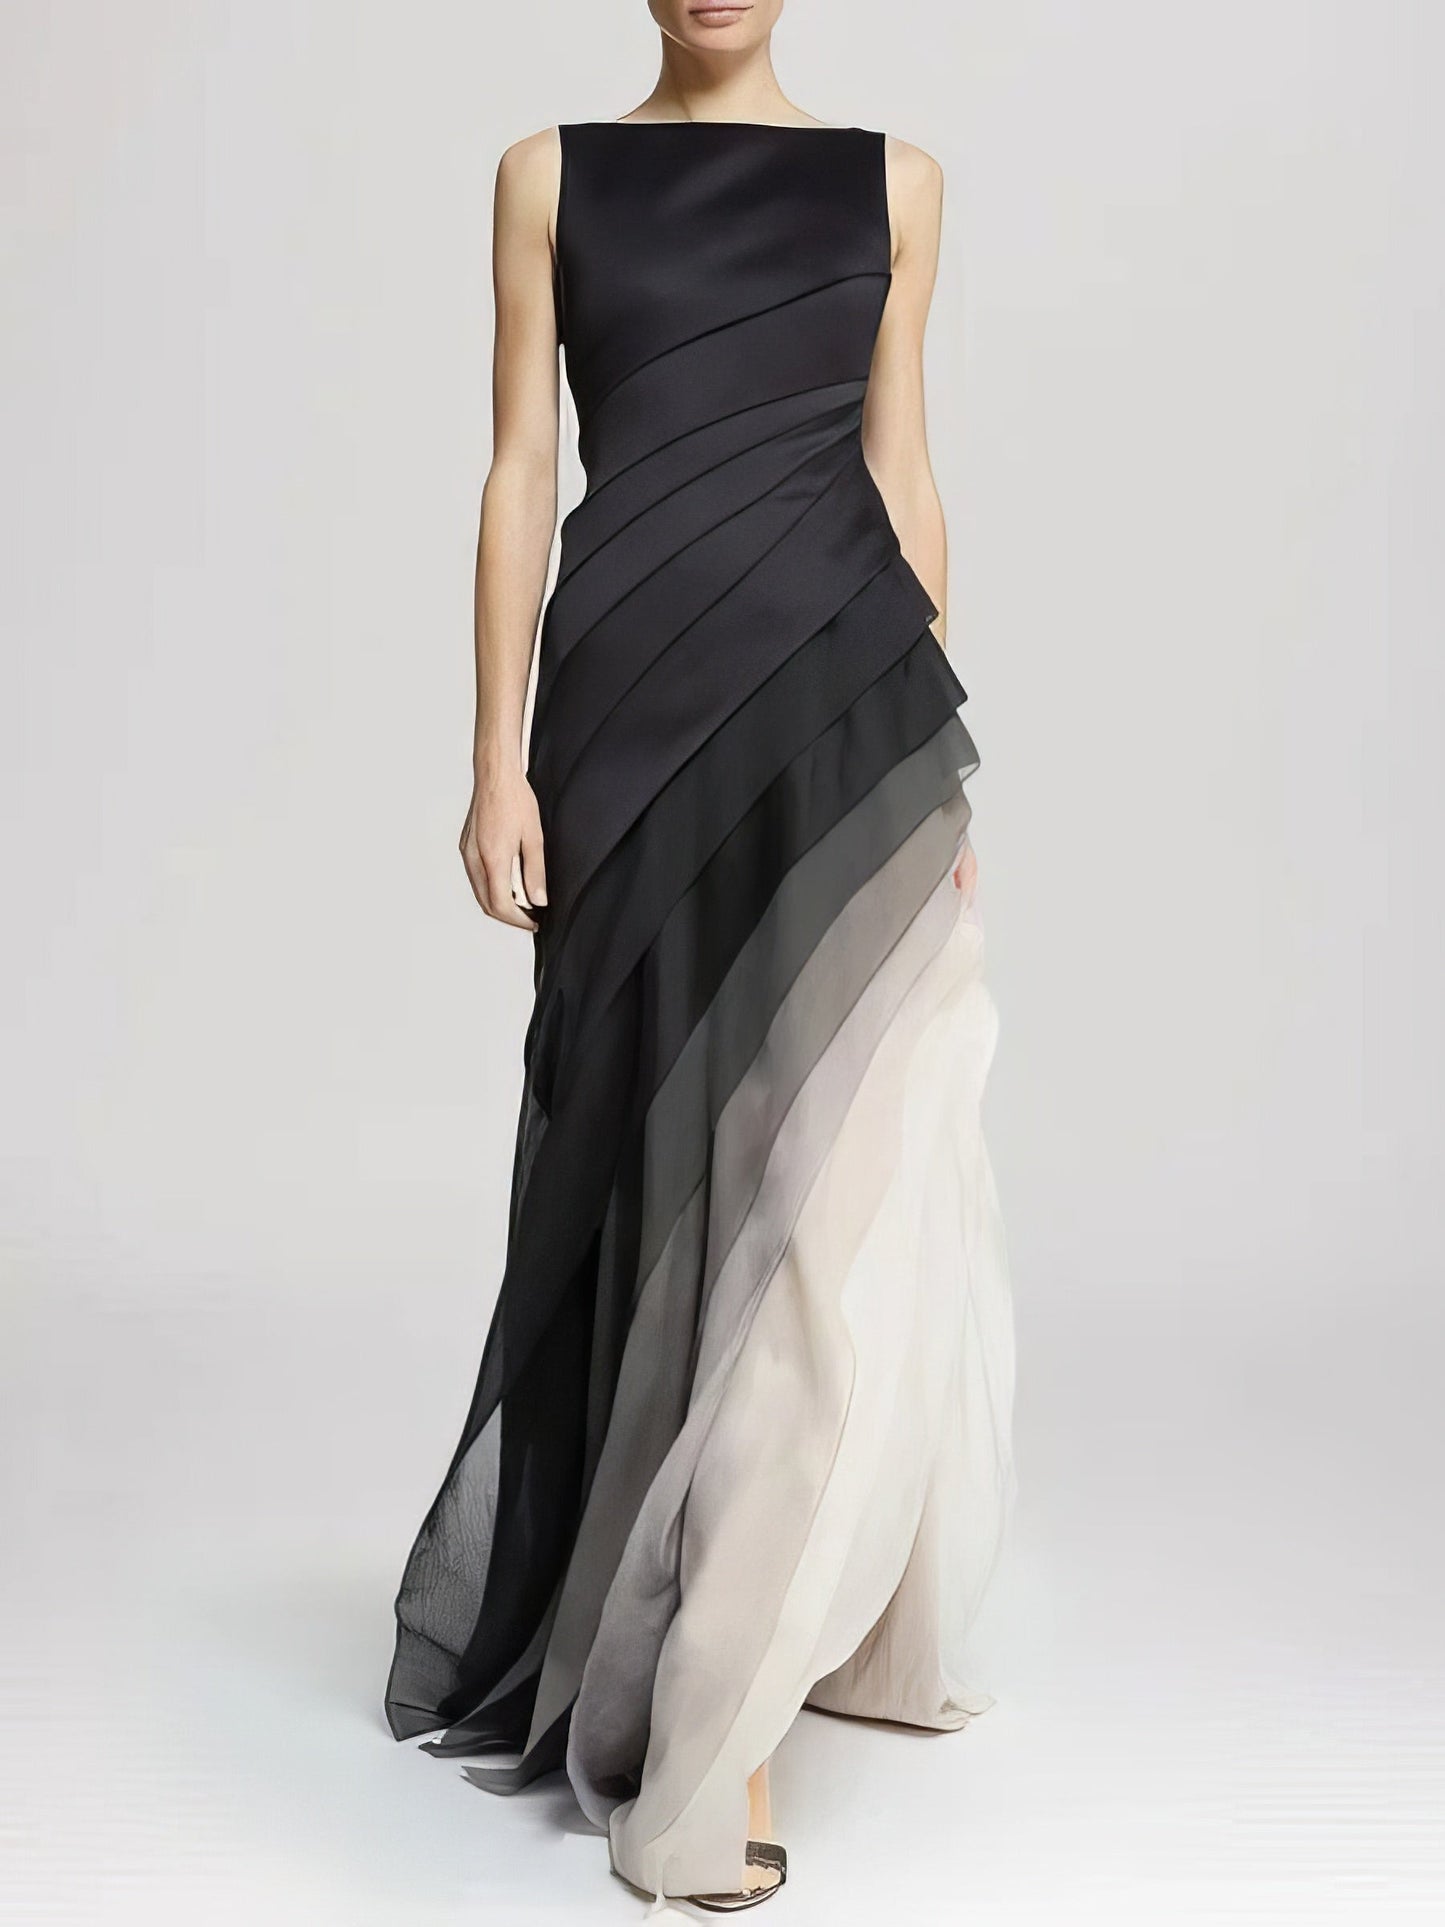 Maxi Dresses - Ombre Layered High Waist Irregular Dress - MsDressly